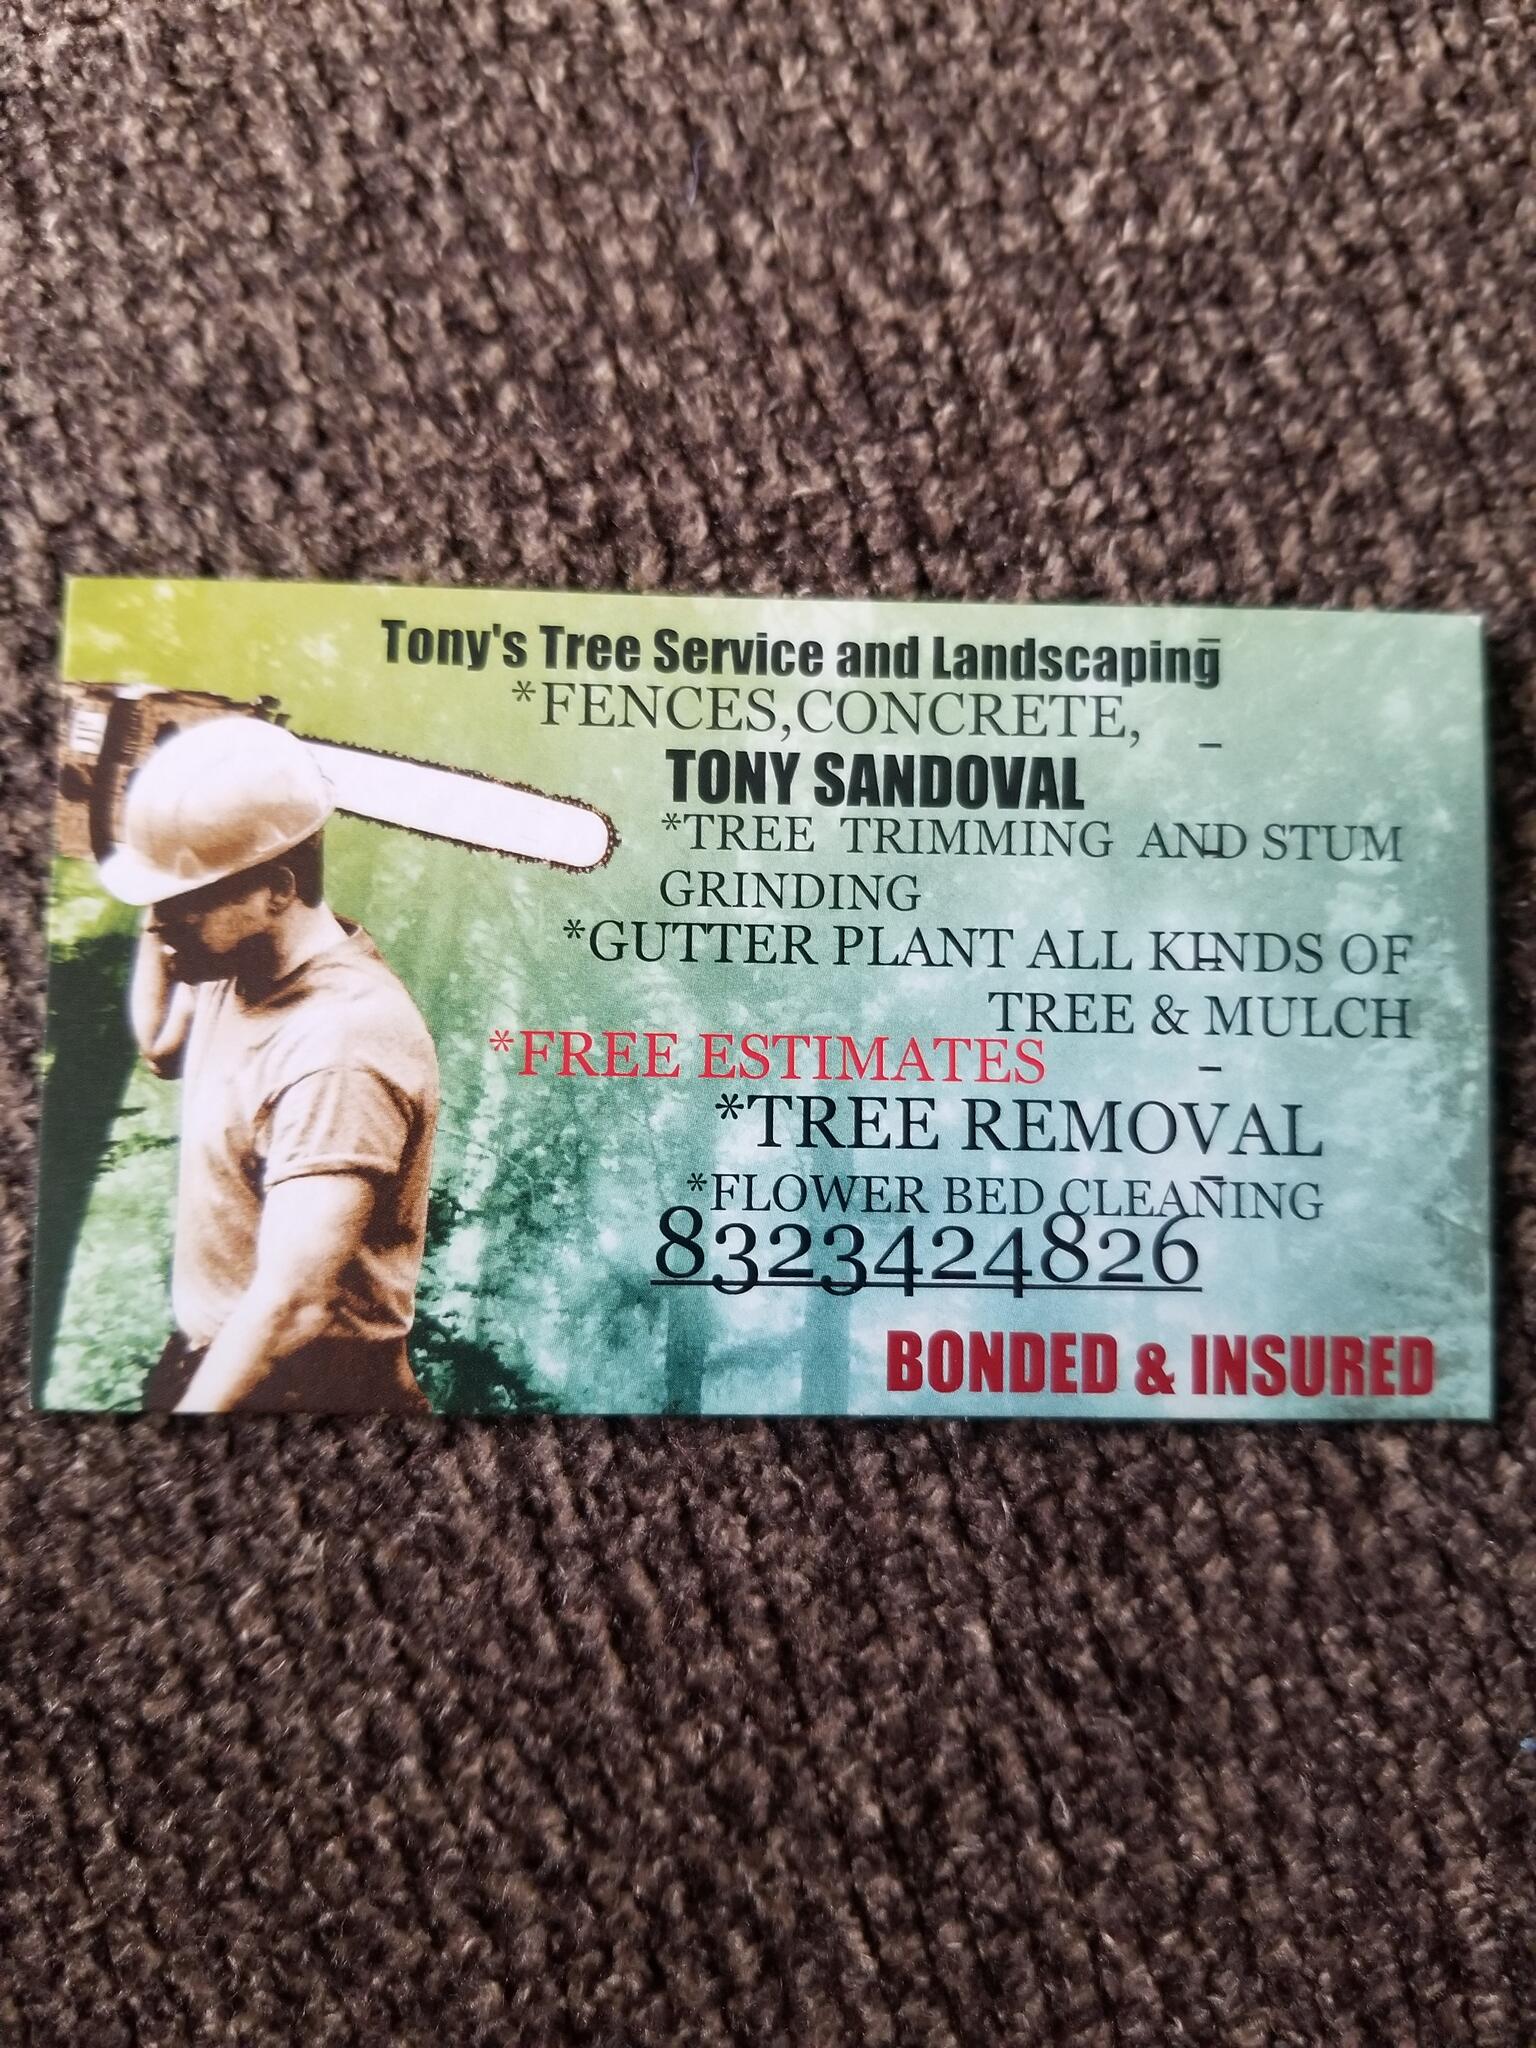 tony's tree service & landscaping